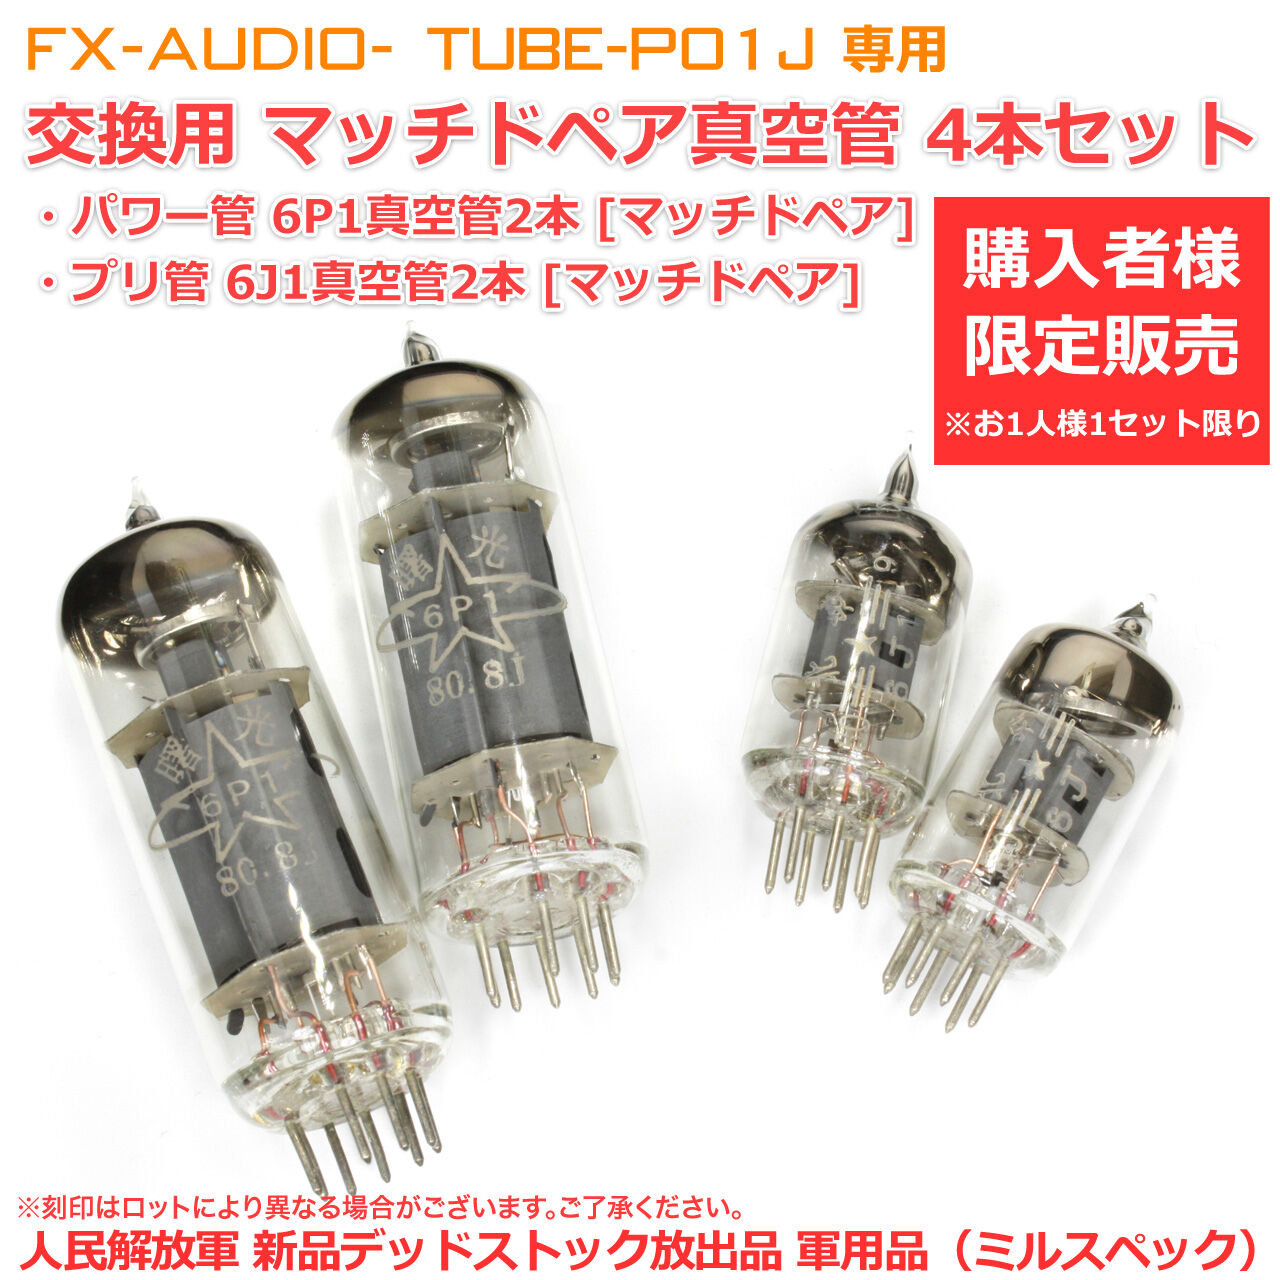 シングルエンド純A級 真空管プリメインアンプ「TUBE-P01J」のご紹介